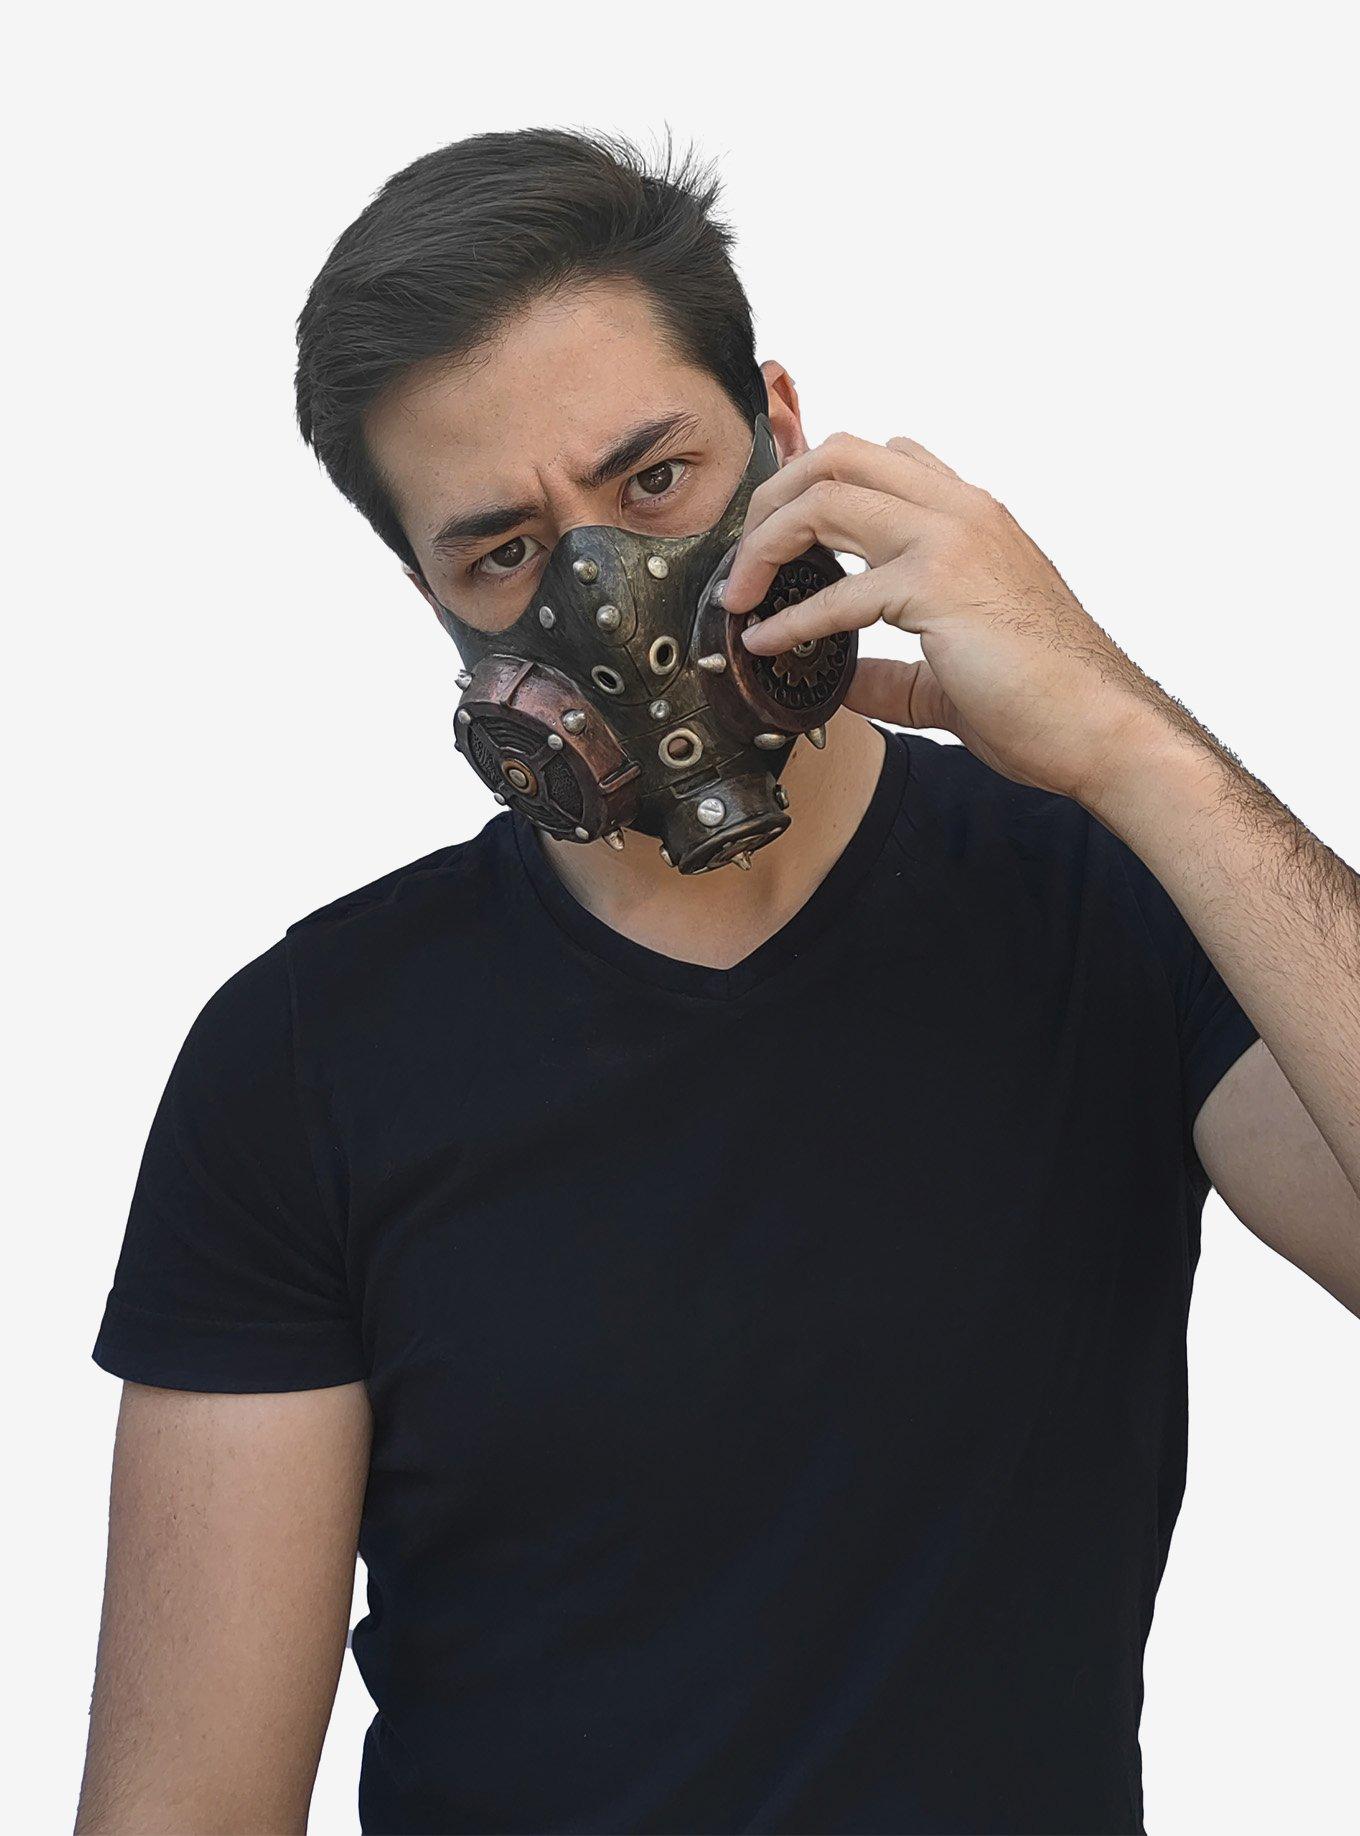 Steampunk Muzzle Mask